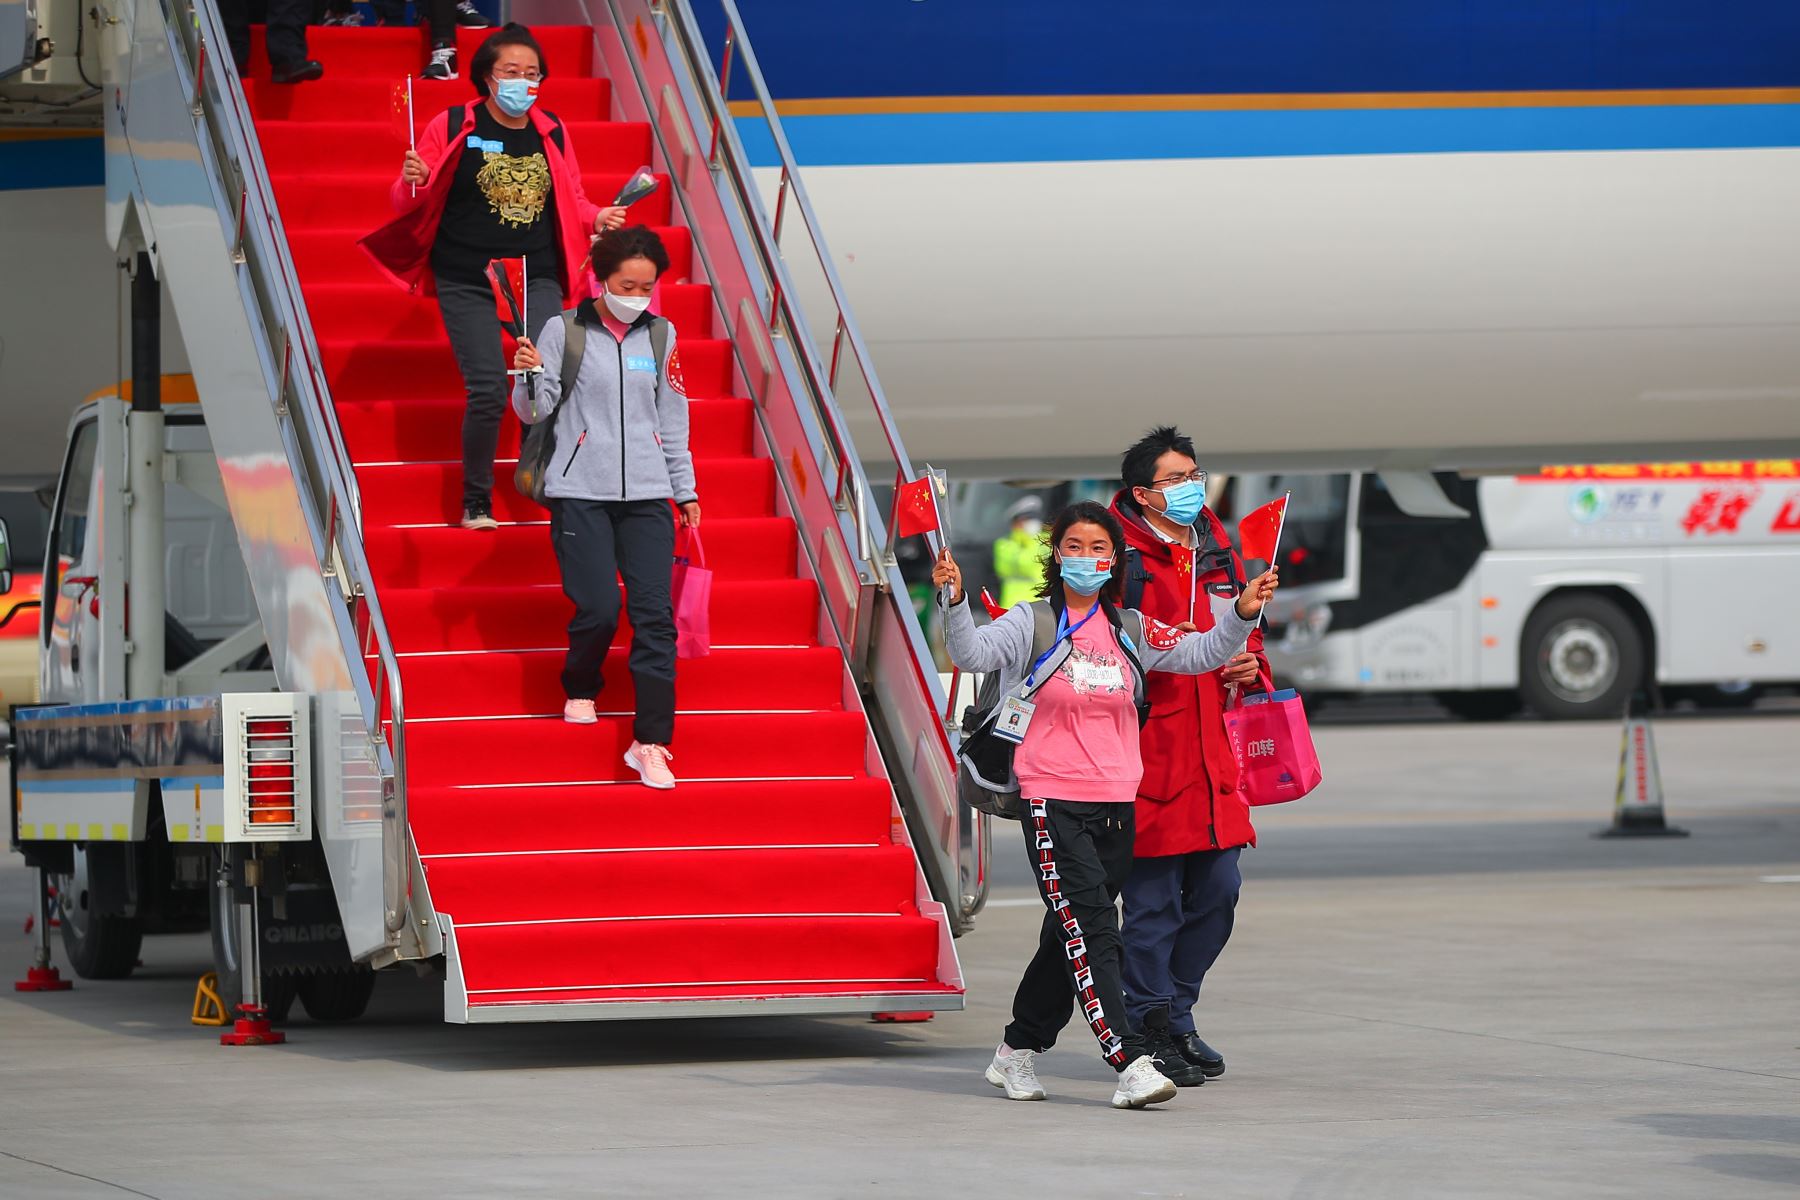 Un equipo de apoyo médico proveniente de Liaoning, que consiste de 173 miembros, dejó la provincia de Hubei a medida que el brote epidémico en la provincia afectada ha sido moderado.
Foto: Xinhua